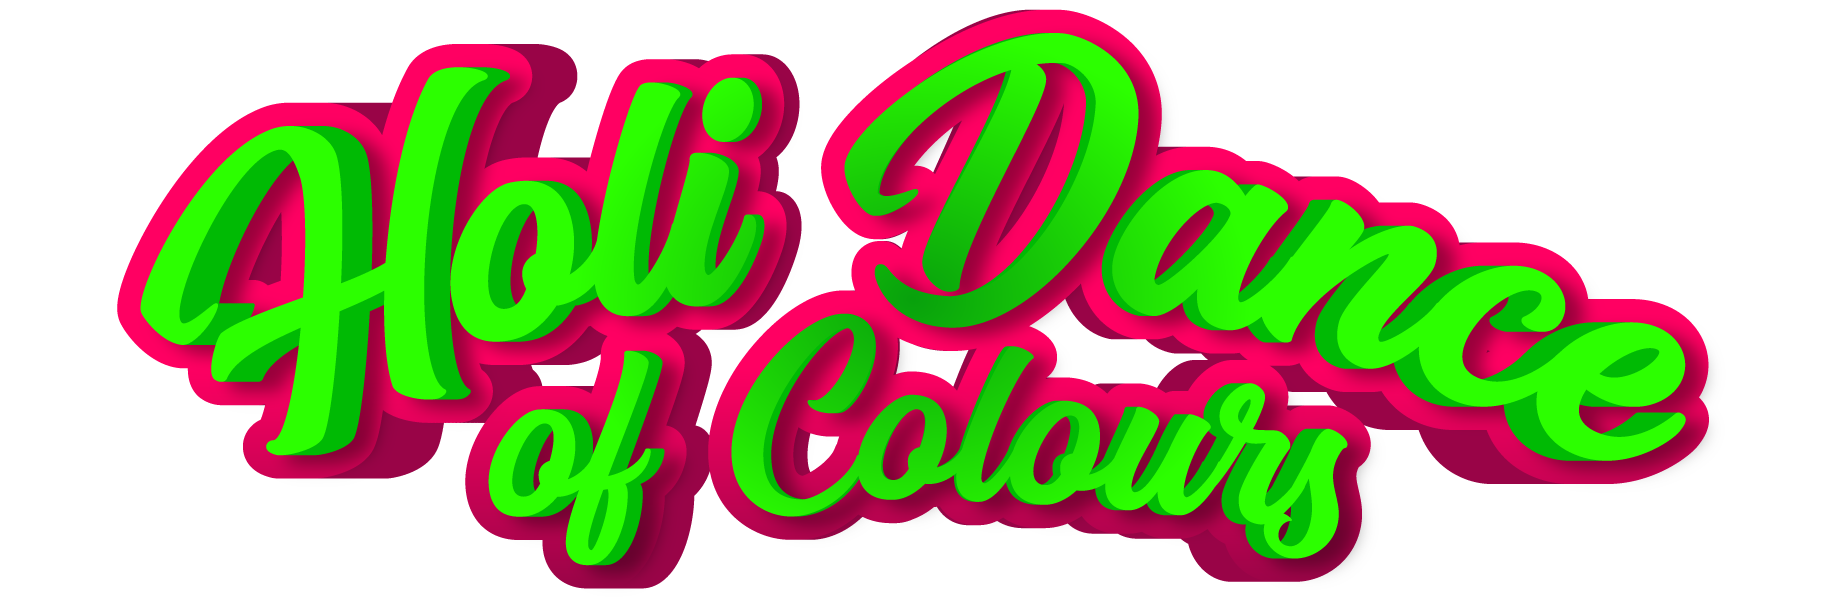 Polvos de Colores y Eventos Holi | Holi Dance of Colours